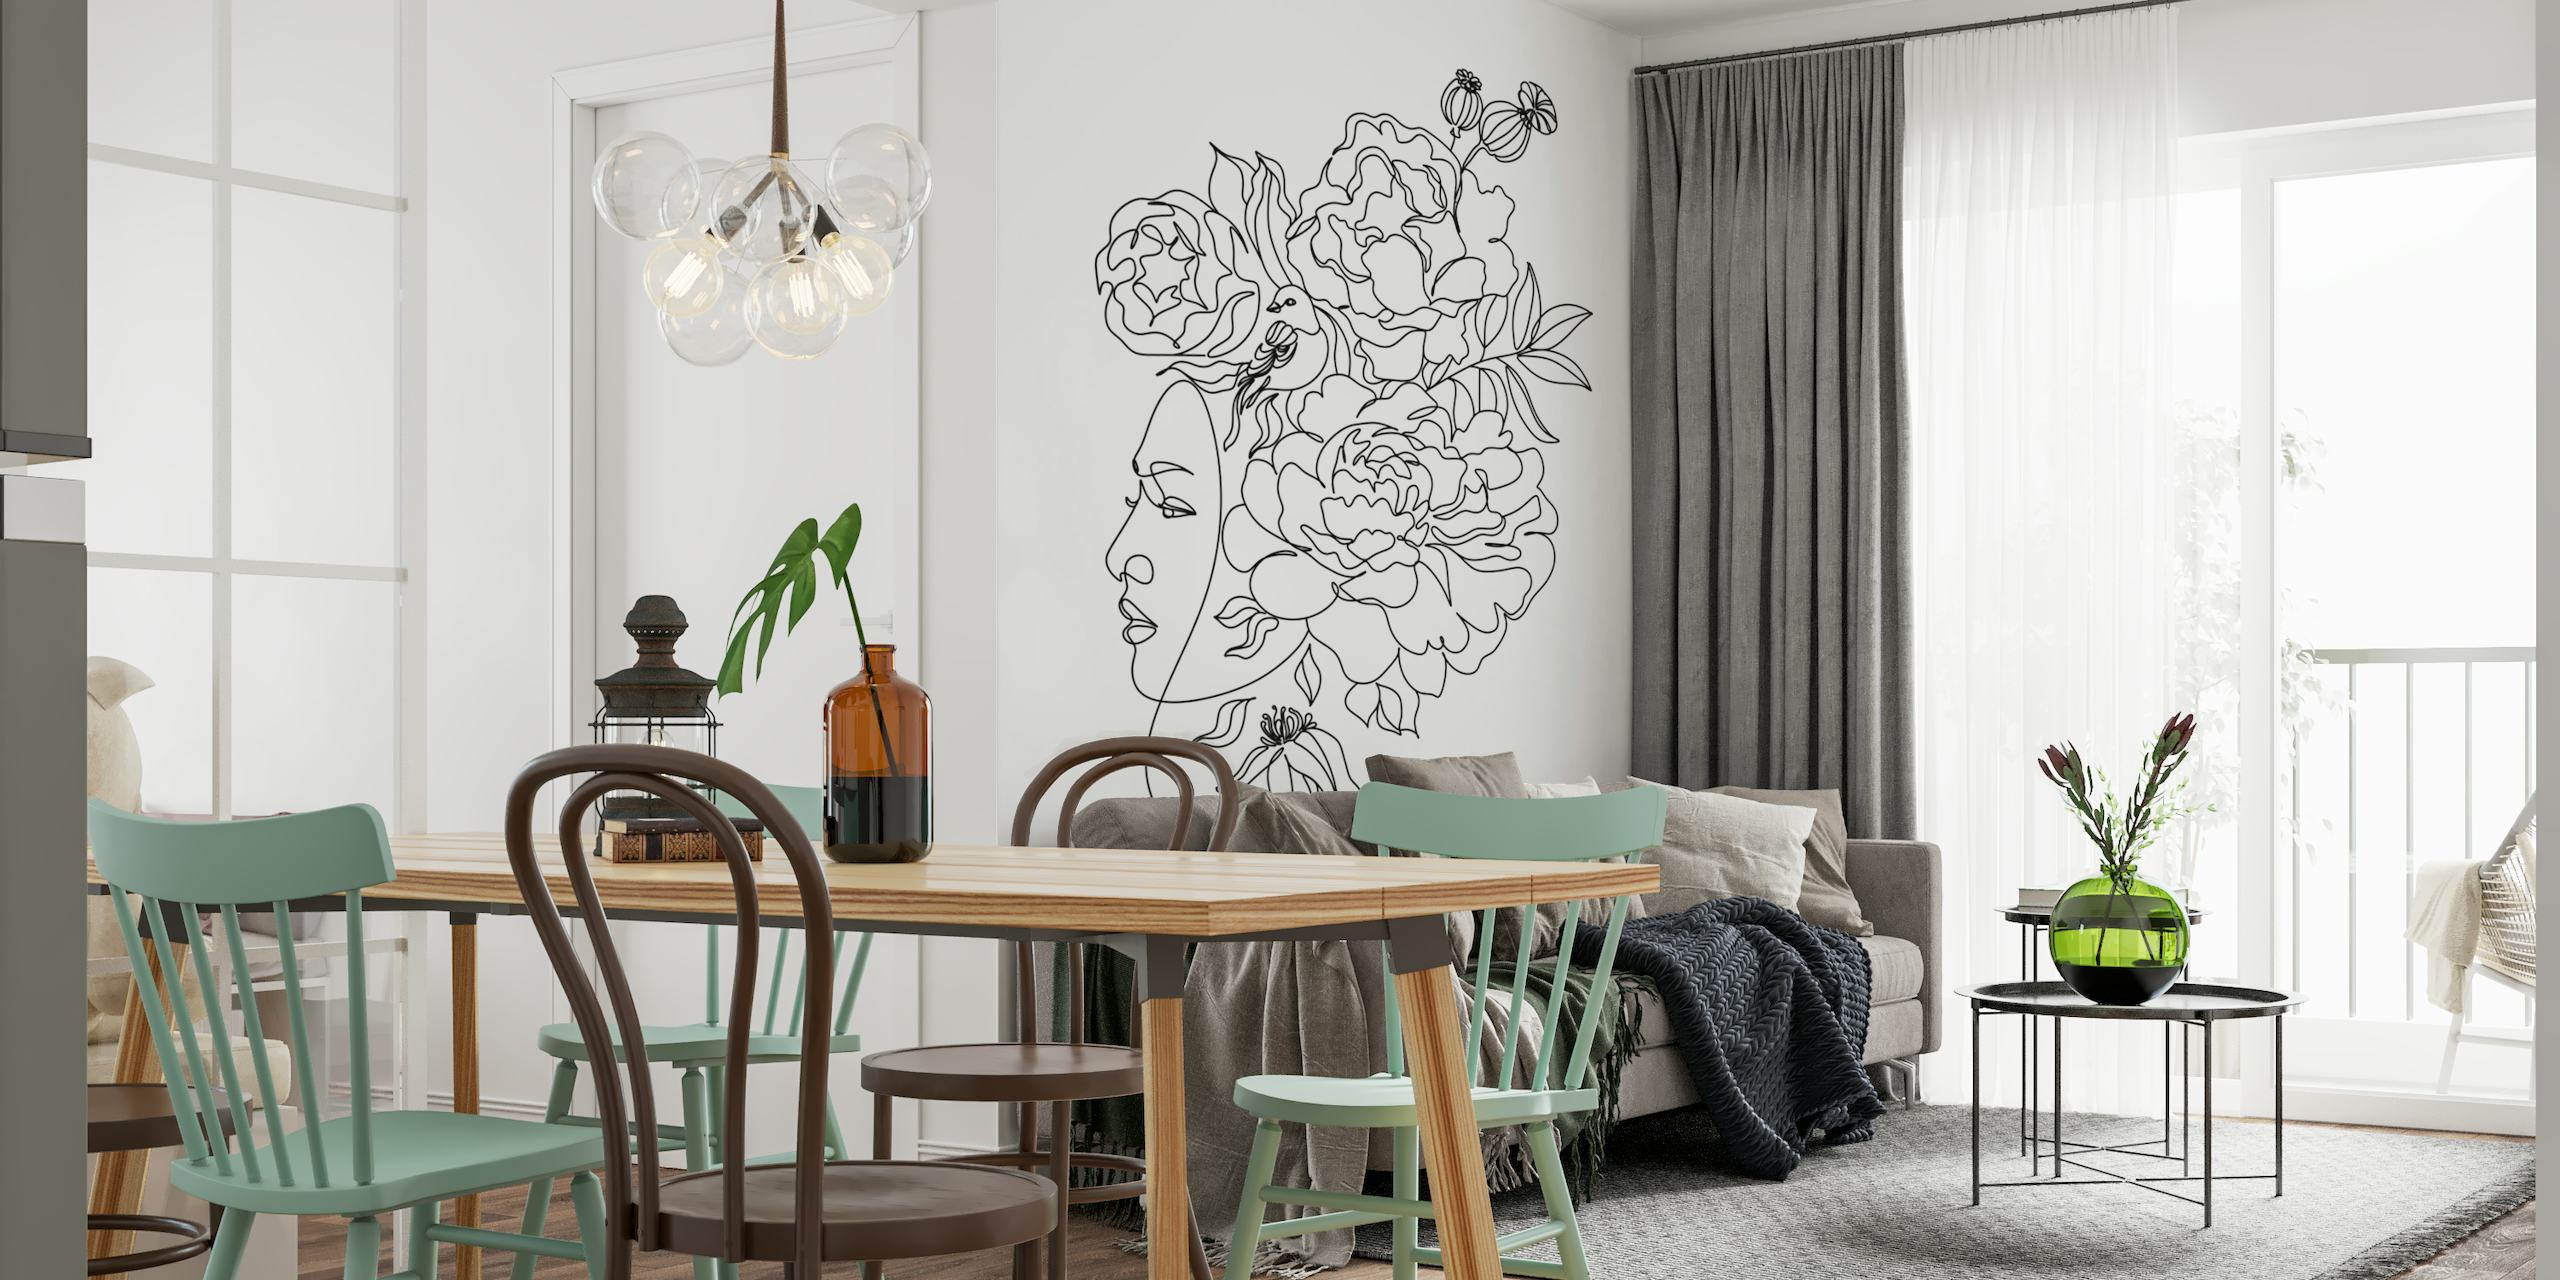 Minimalistisches Line-Art-Wandbild mit dem Profil einer Frau und ineinander verschlungenen Blumen